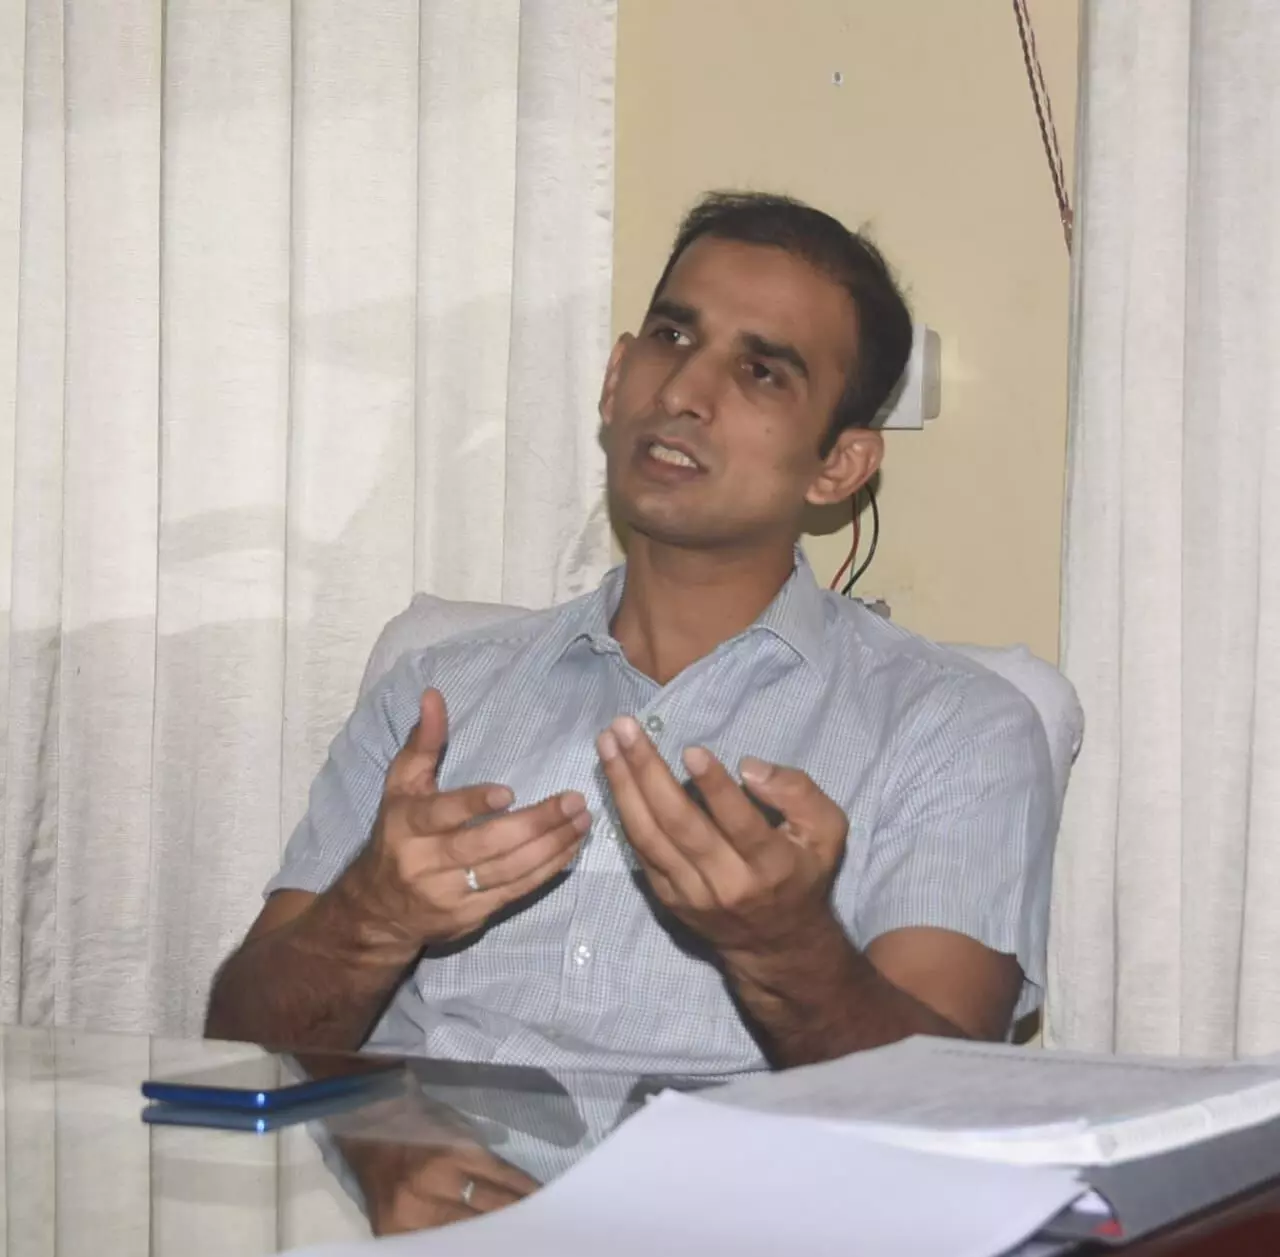 साइबर क्राइम पर अंकुश के लिये सर्किल लेबल पर स्पेशल टीम- सलमान ताज पाटिल